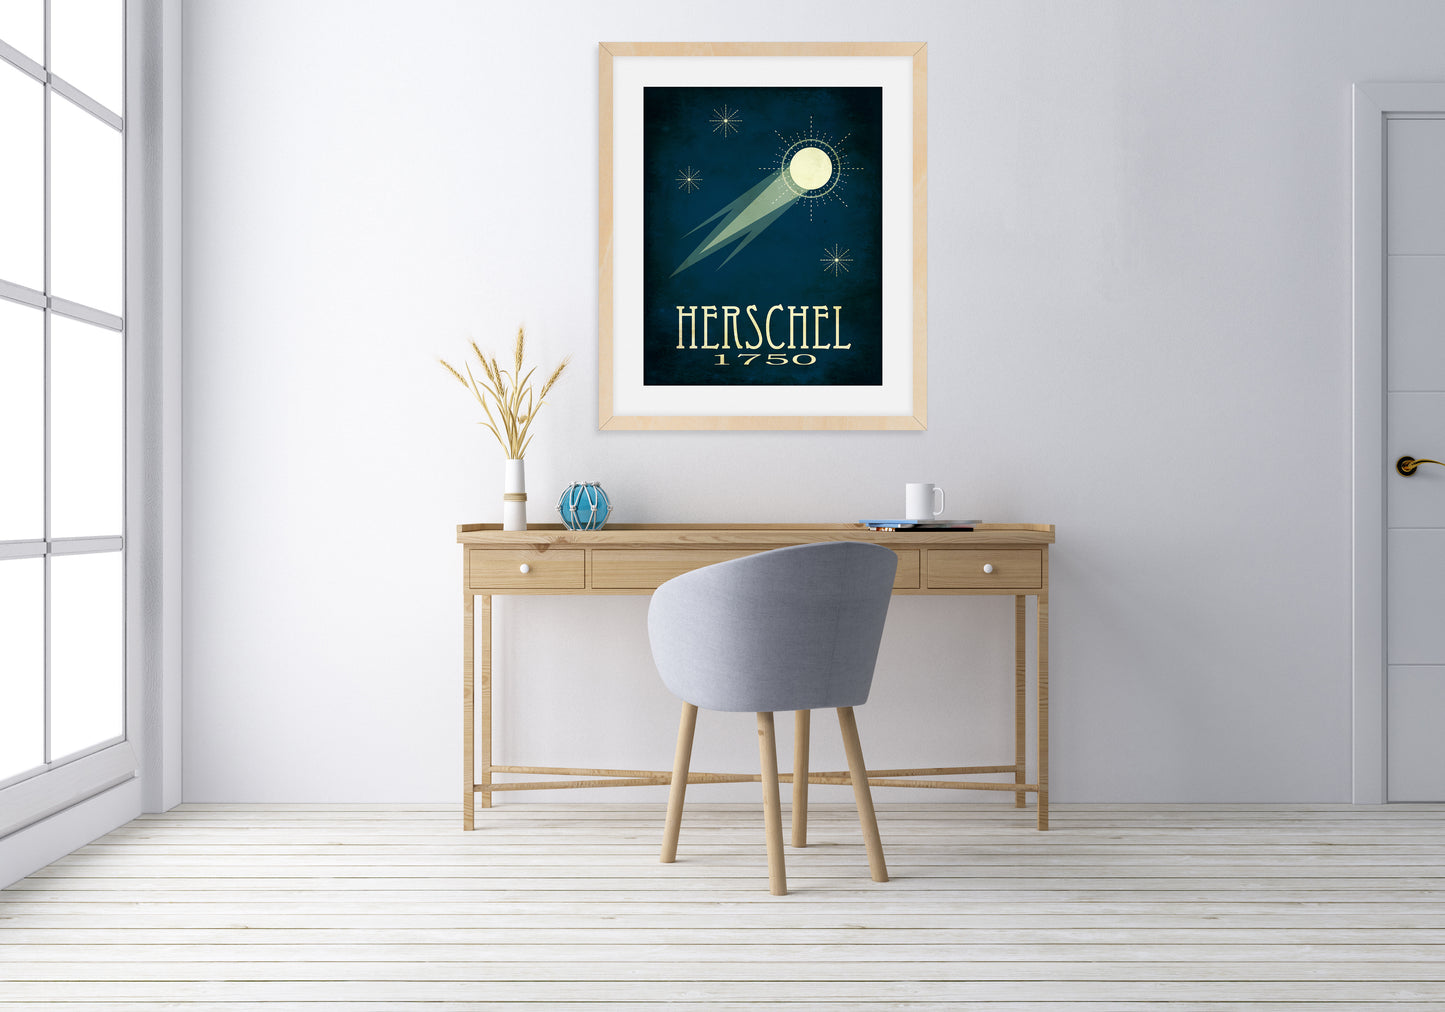 Caroline Herschel Comet Art Print, Astronomy Decor